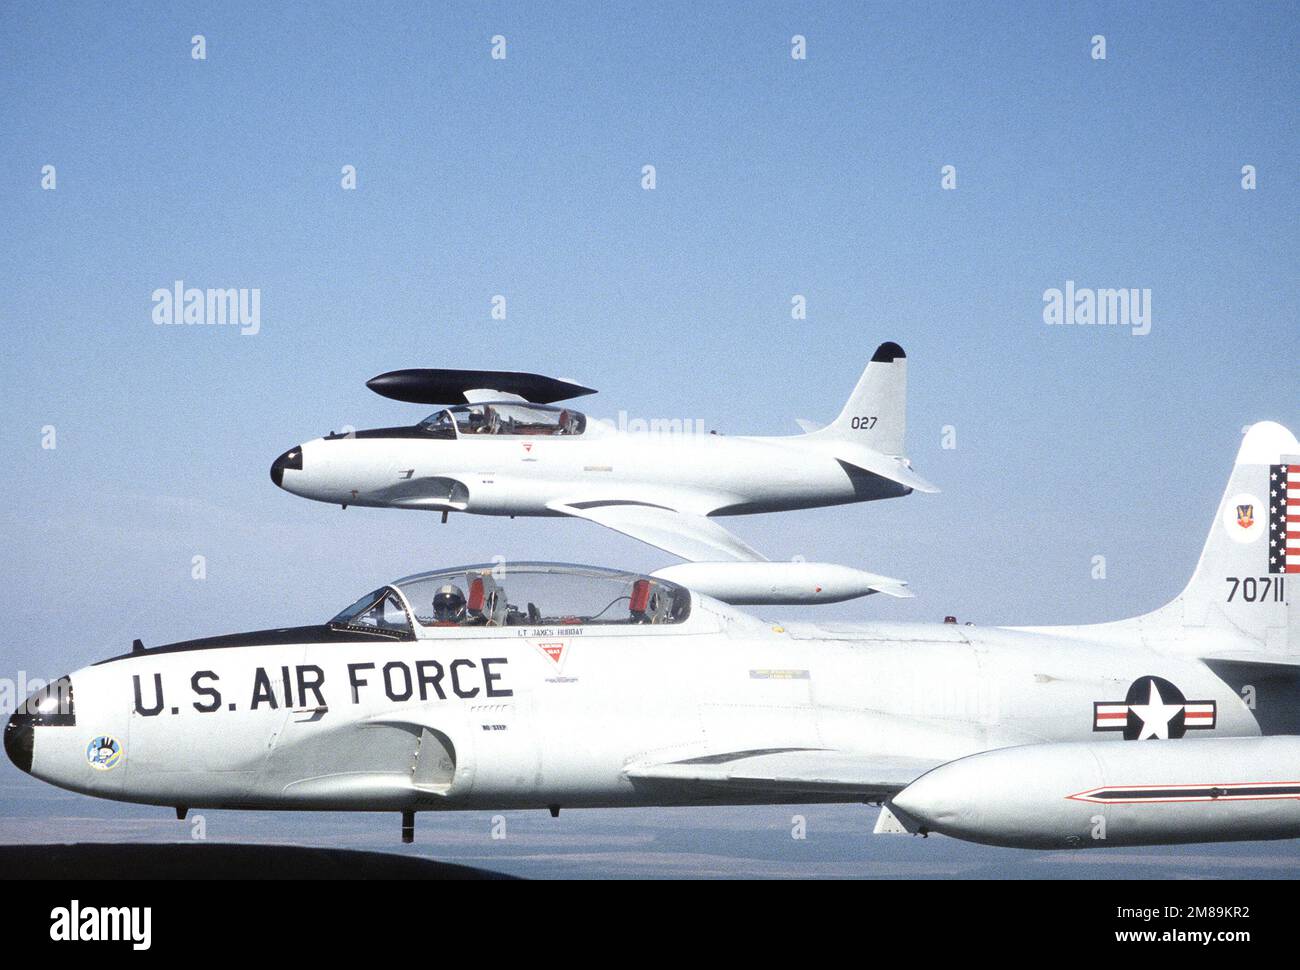 Linke Seitenansicht von zwei T-33 Shooting Star Flugzeugen im Flug. Das weitere Flugzeug wurde neu lackiert und neu nummeriert, in Erwartung seiner Lieferung an die mexikanische Luftwaffe, an die es verkauft wurde. Die engere T-33 gehört immer noch dem 95. Fighter in. Basis: Luftwaffenstützpunkt Tyndall Bundesstaat: Florida (FL) Land: Vereinigte Staaten von Amerika (USA) Stockfoto